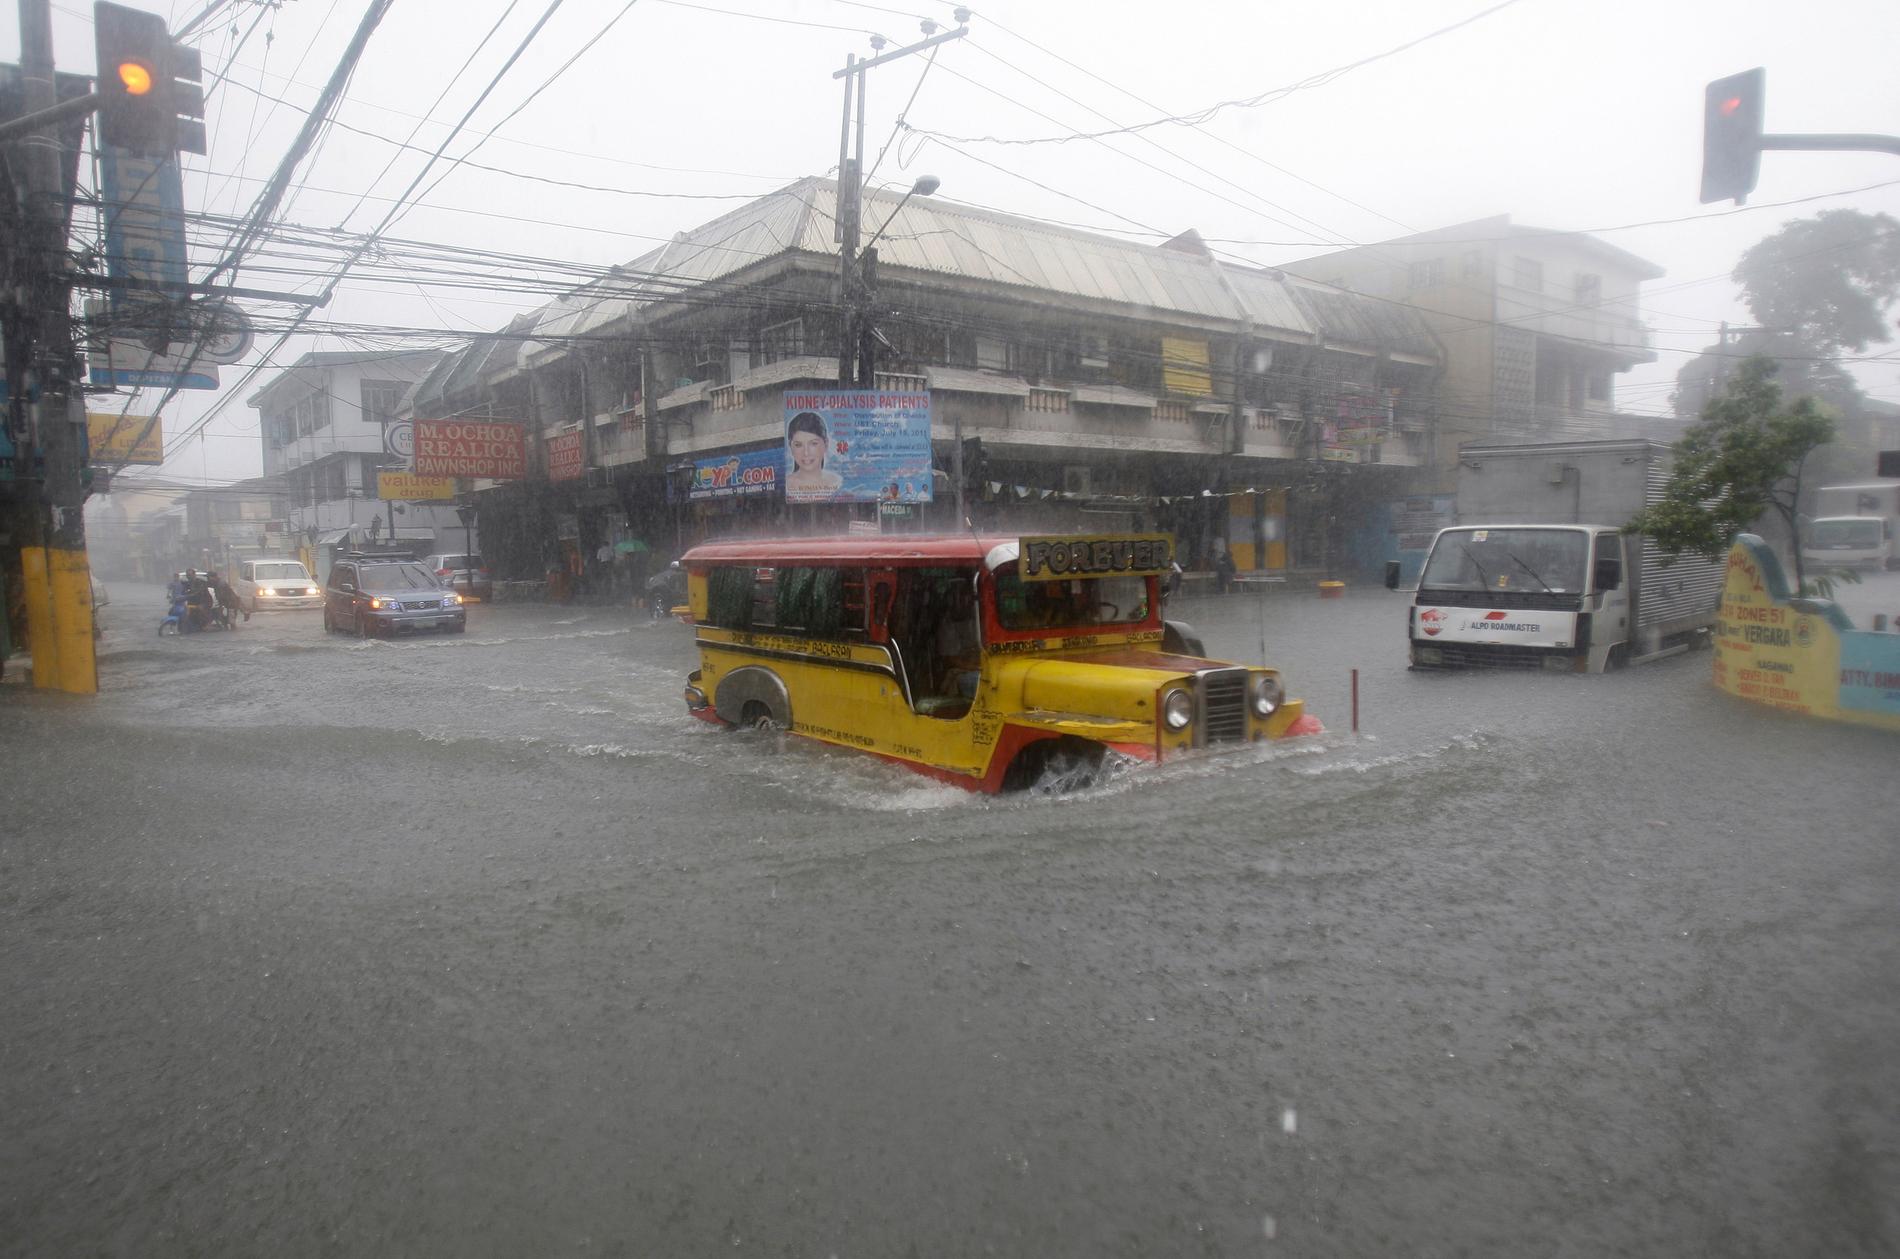 I tisdags drabbades staden Manila i Filippinerna av kraftiga översvämningar efter tyfonen Muifas framfart. Minst fyra personer har dött. 